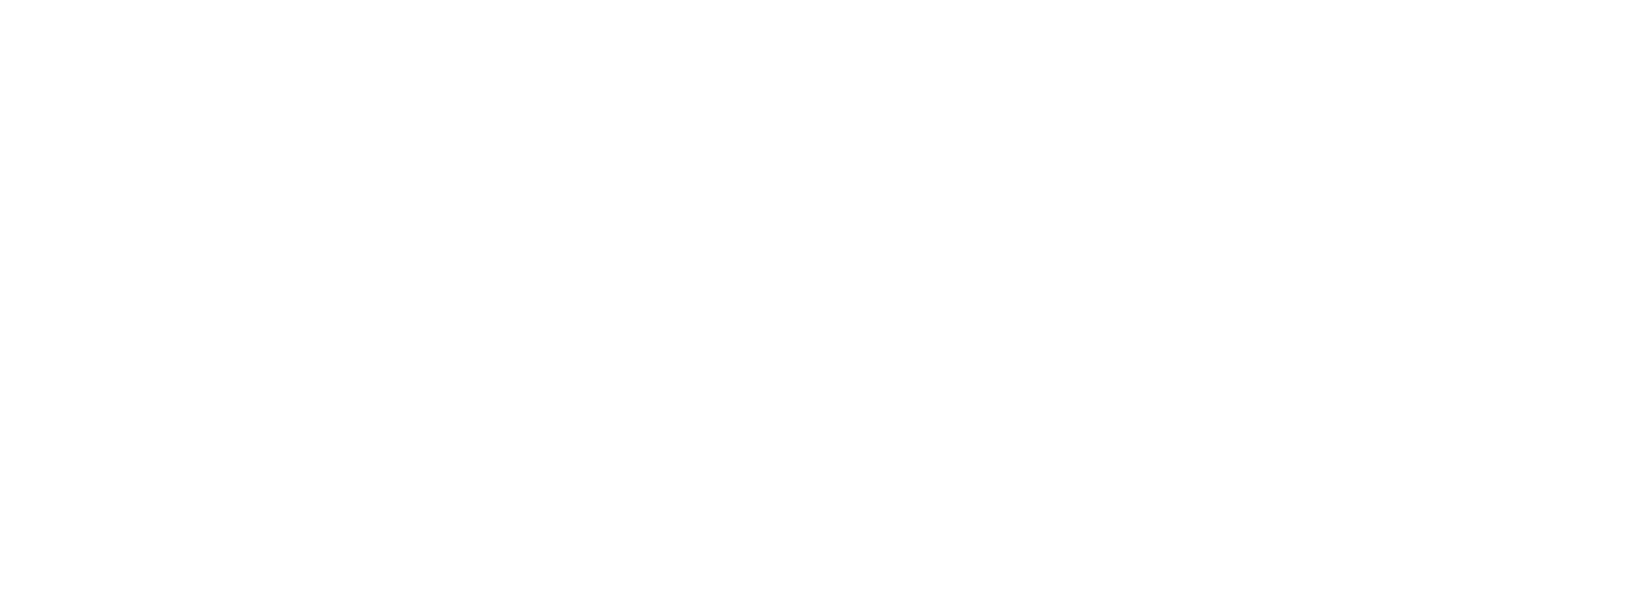 Free Taylor